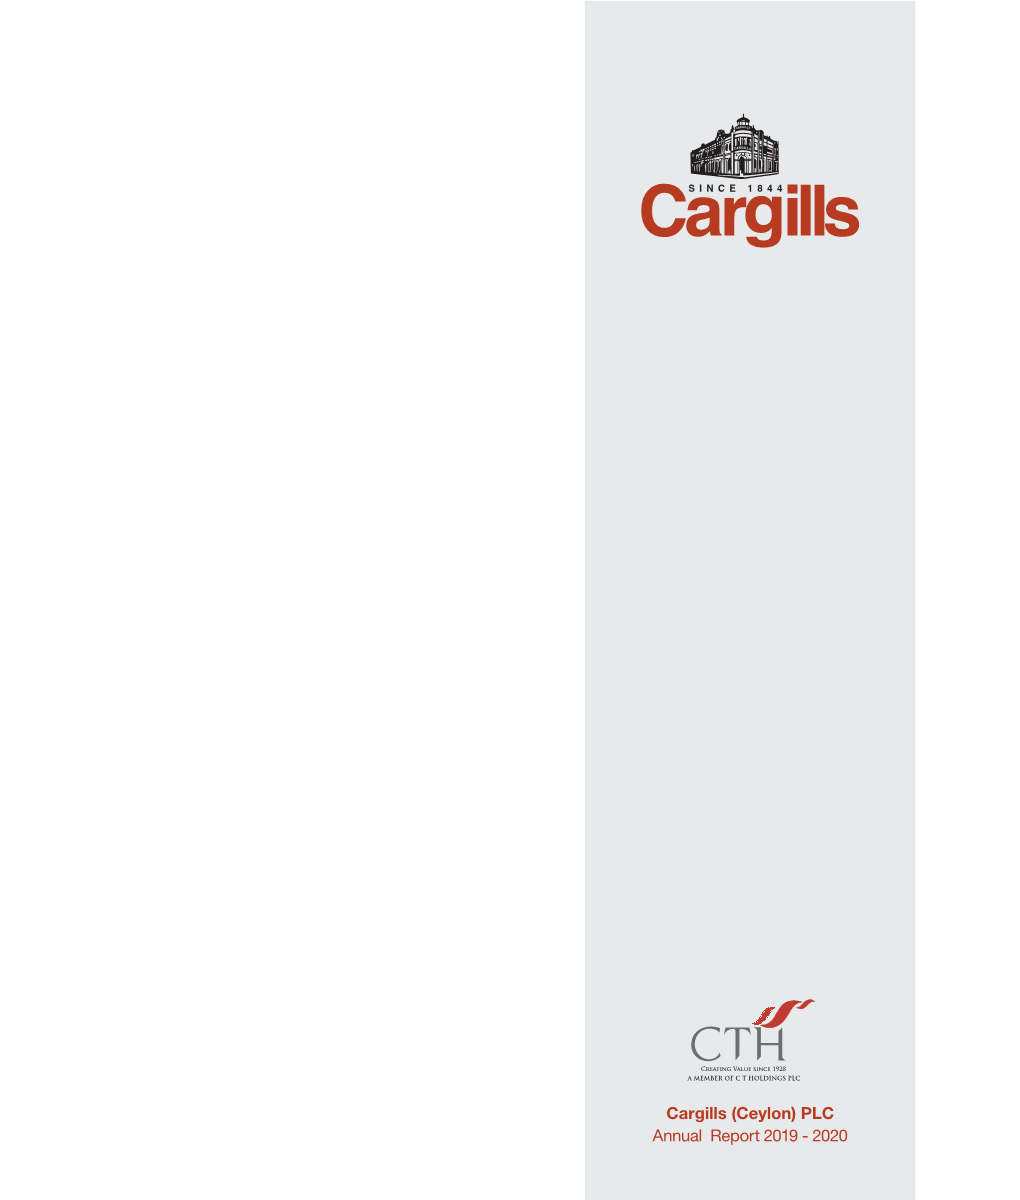 Cargills (Ceylon) PLC Annual Report 2019 - 2020 Contents